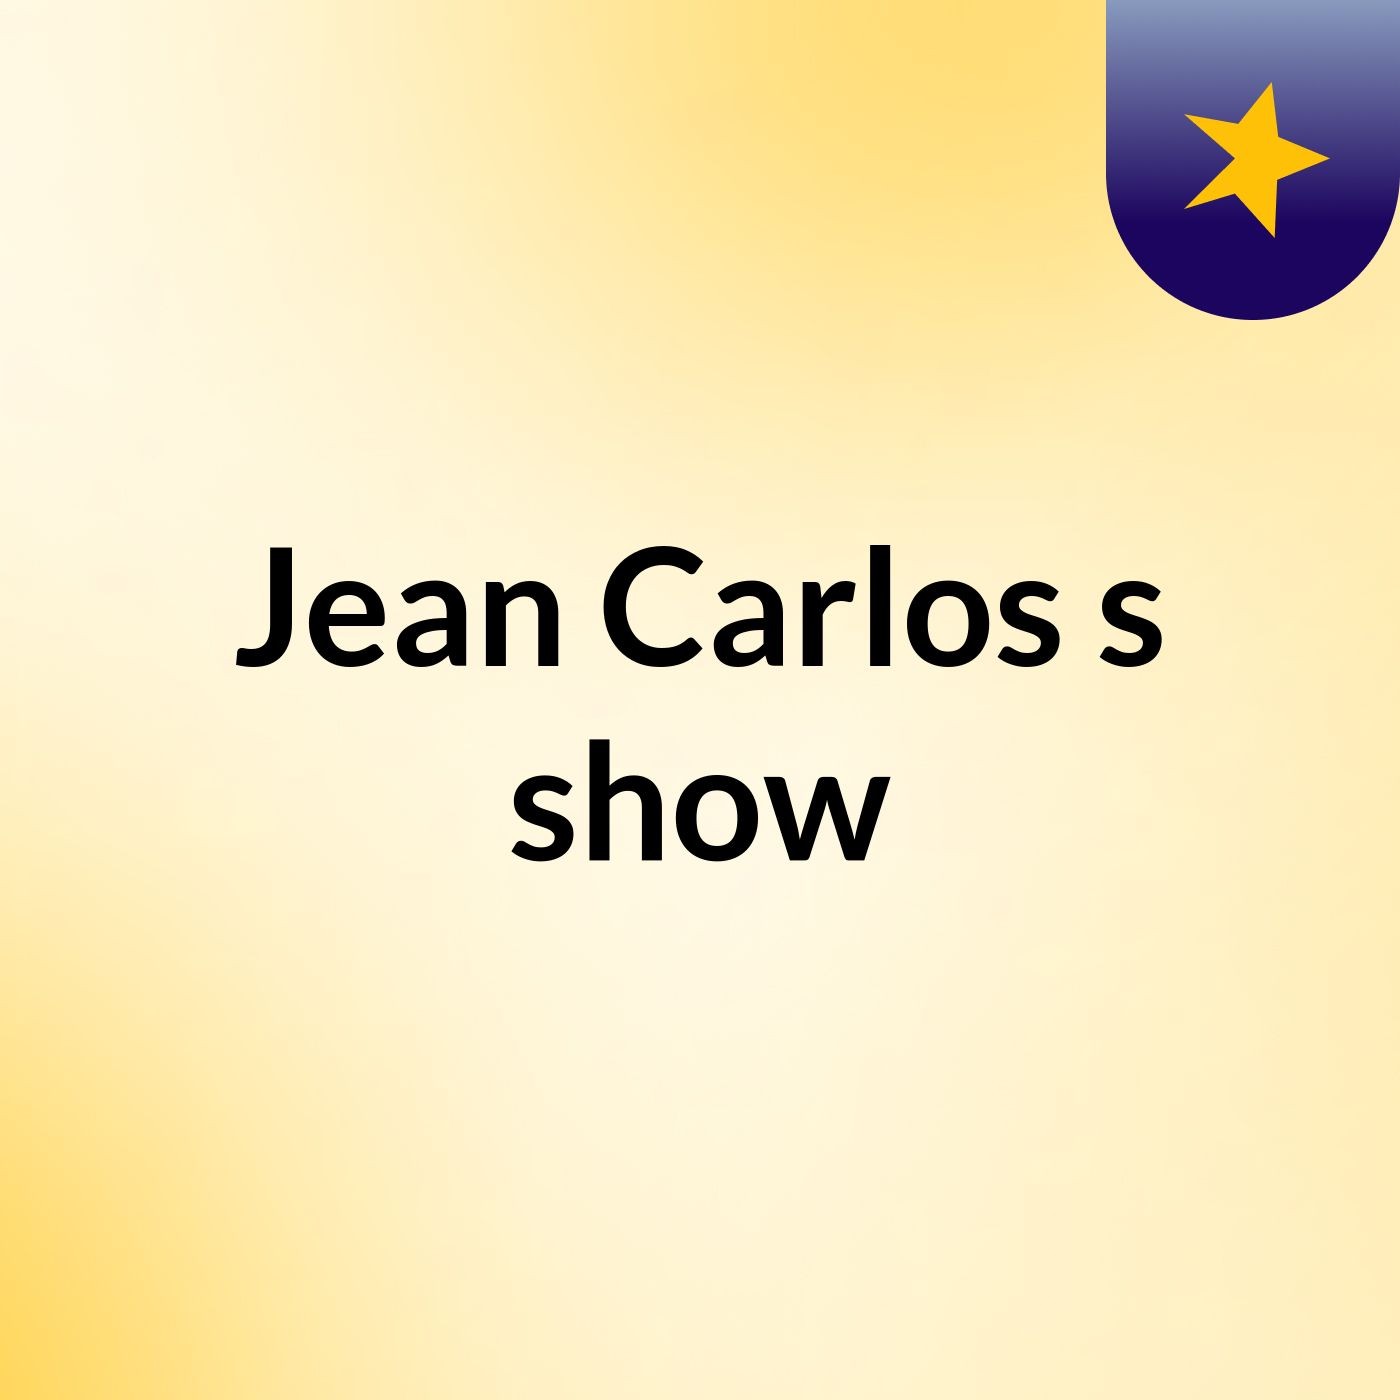 Jean Carlos's show